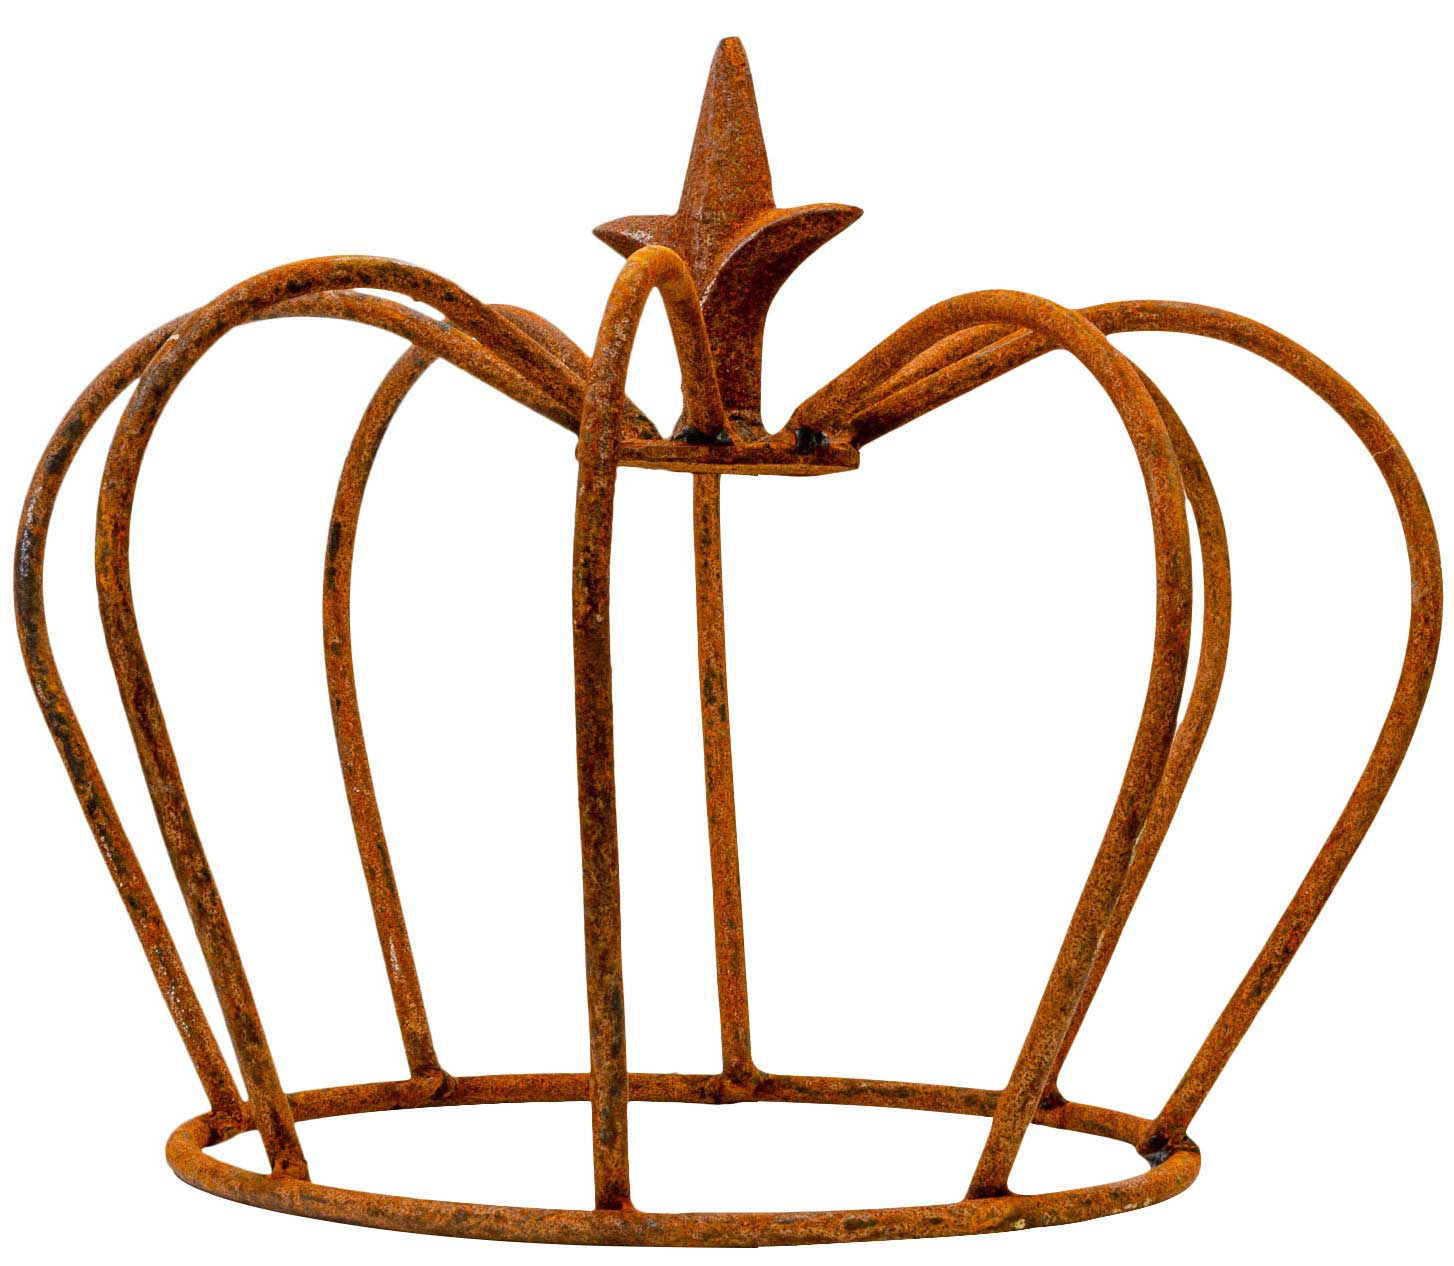 Eisen Deko Luxus Crown Iron Lily Garden Decoration Rust Antique Style 24cm